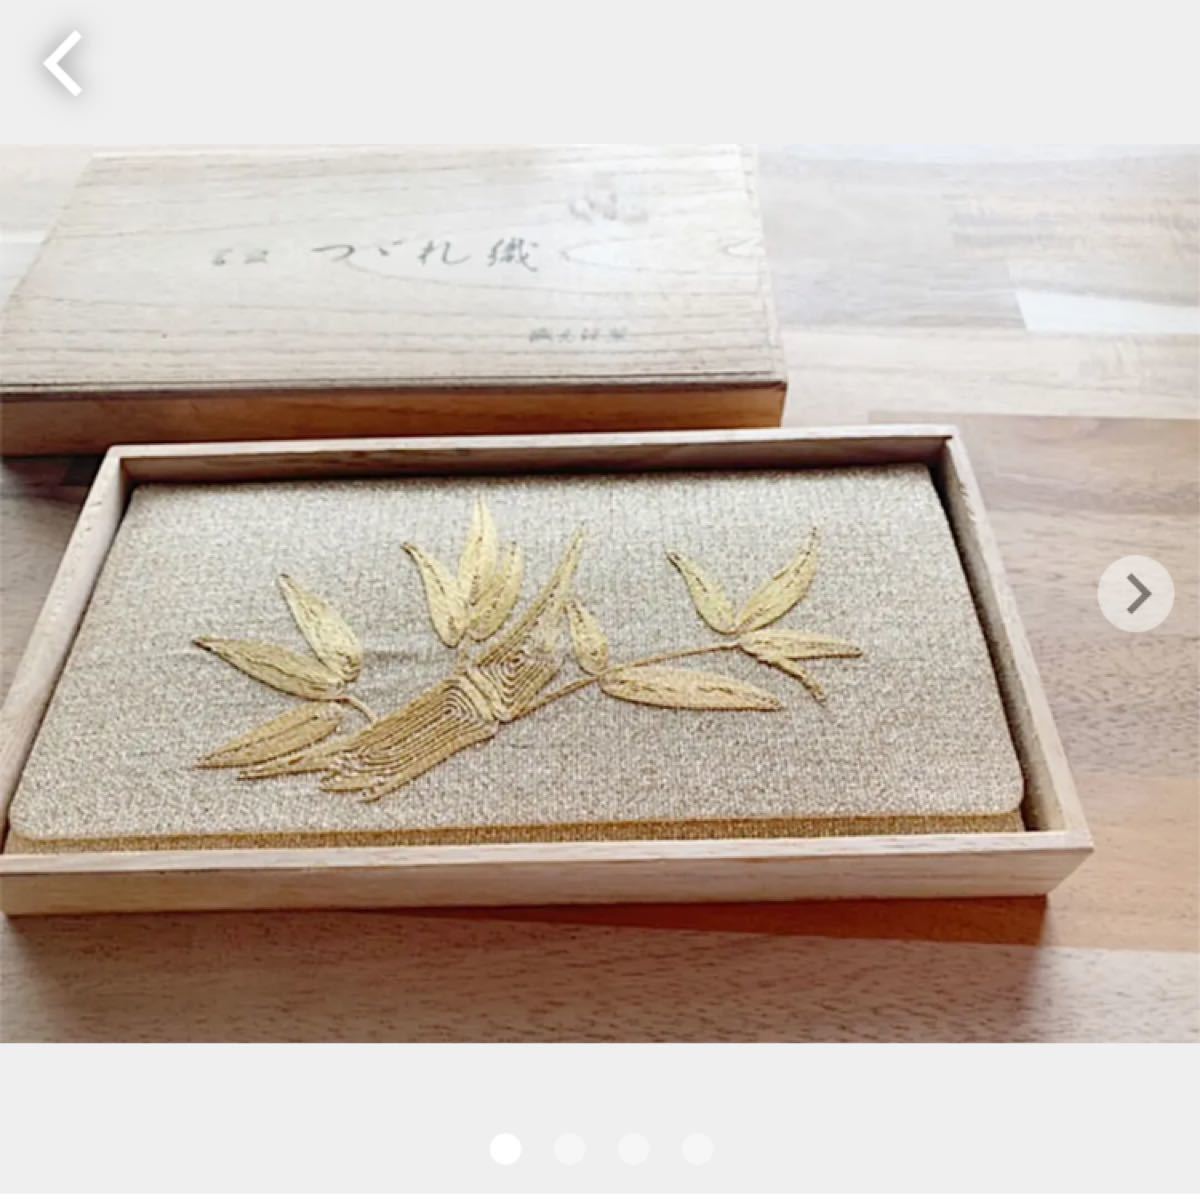 高級つづれ織 お財布 ゴールド 刺繍 和物 日本の伝統品